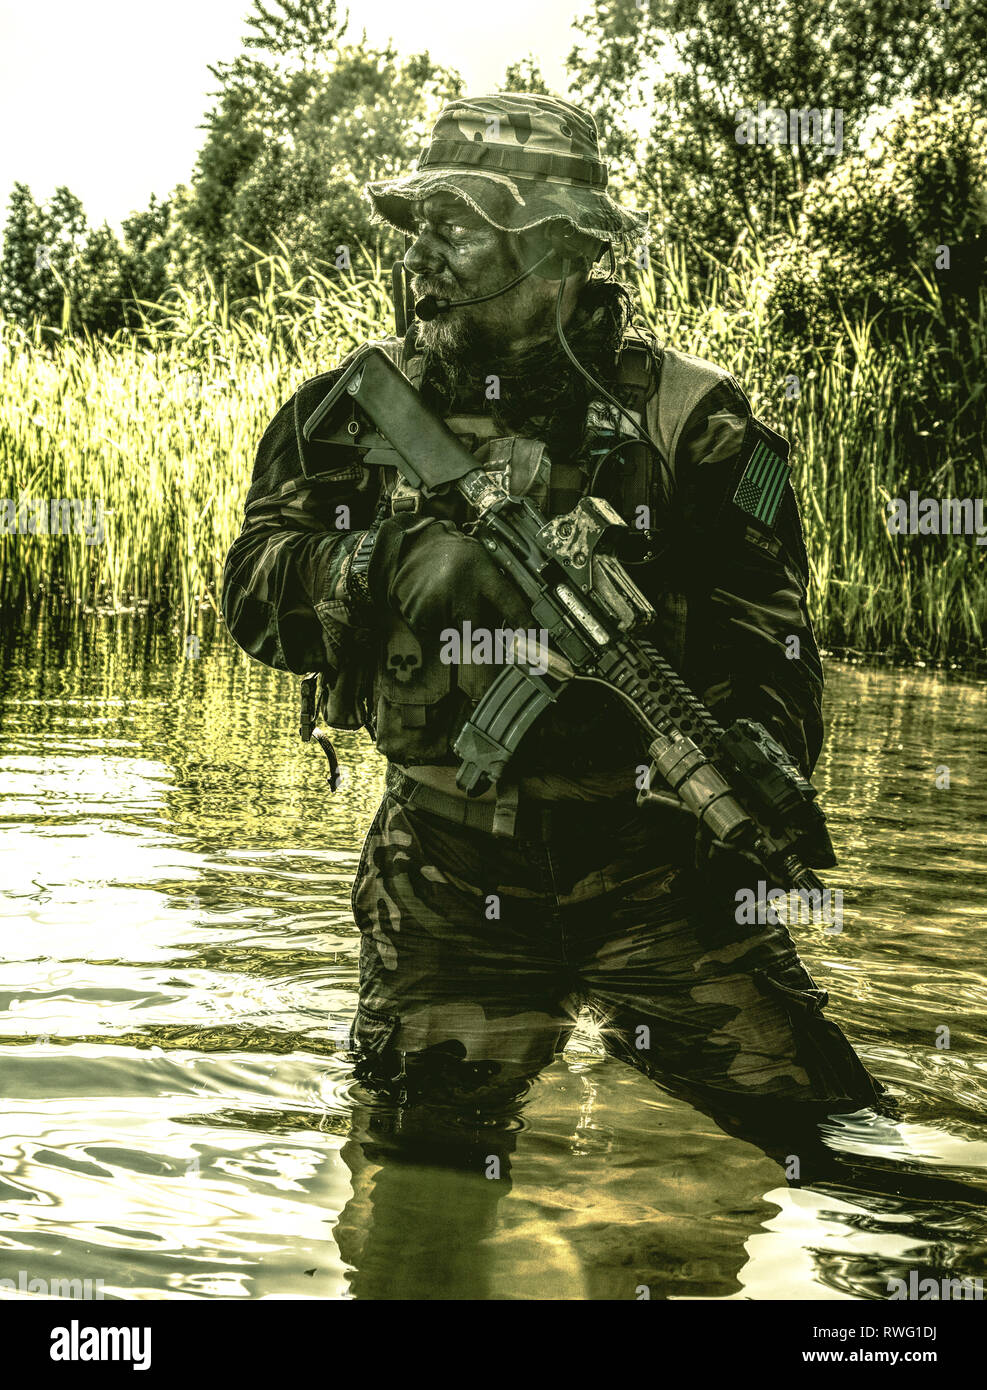 Special forces Soldat in Aktion während einer River Raid im Dschungel Gelände. Stockfoto